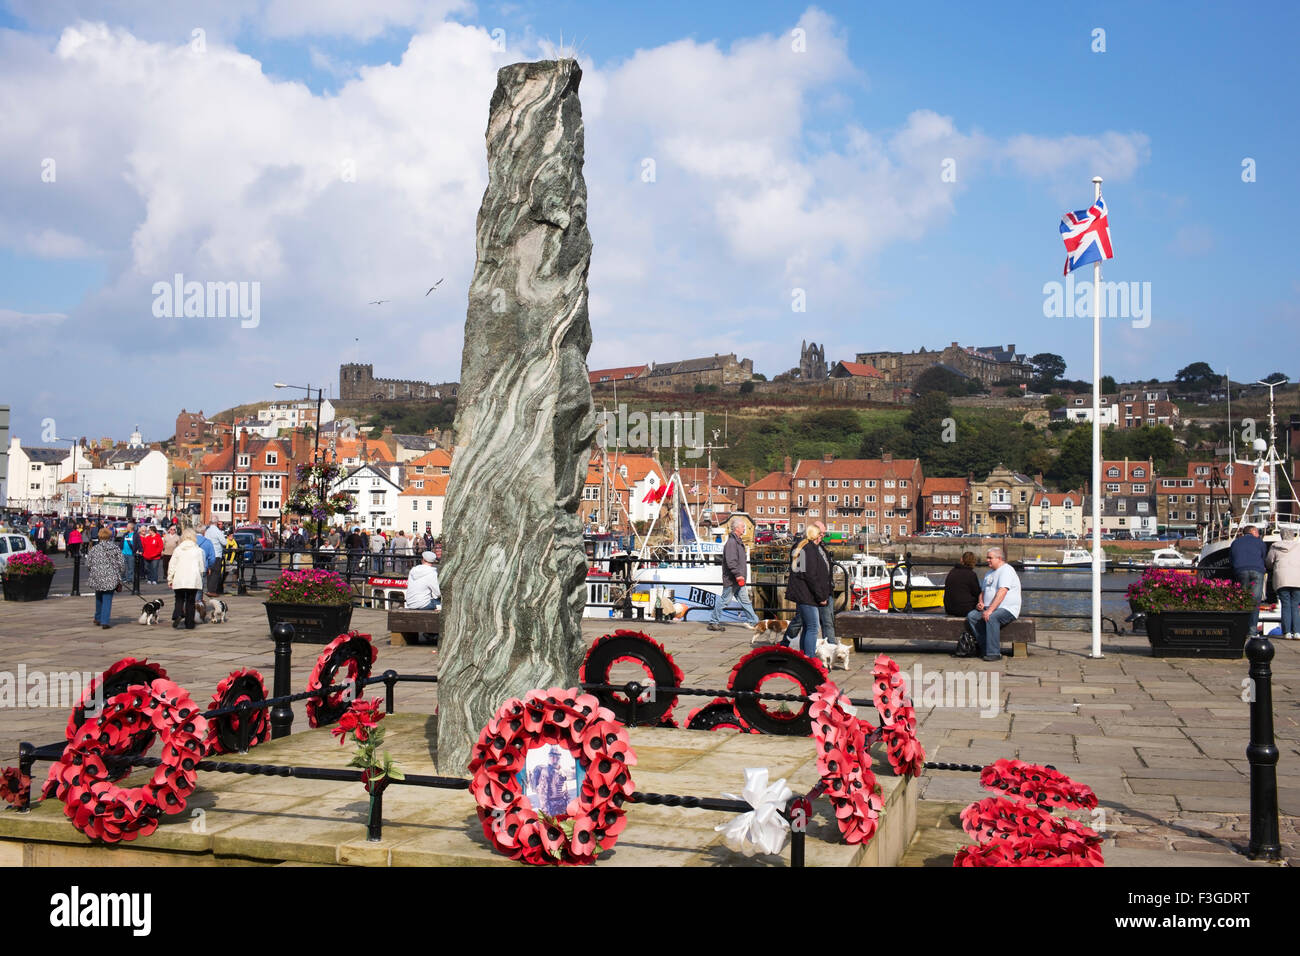 La guerre de granit norvégien mémorial en hommage aux soldats morts au combat de Whitby, Dock, havre Whitby, North Yorkshire, England, UK Banque D'Images